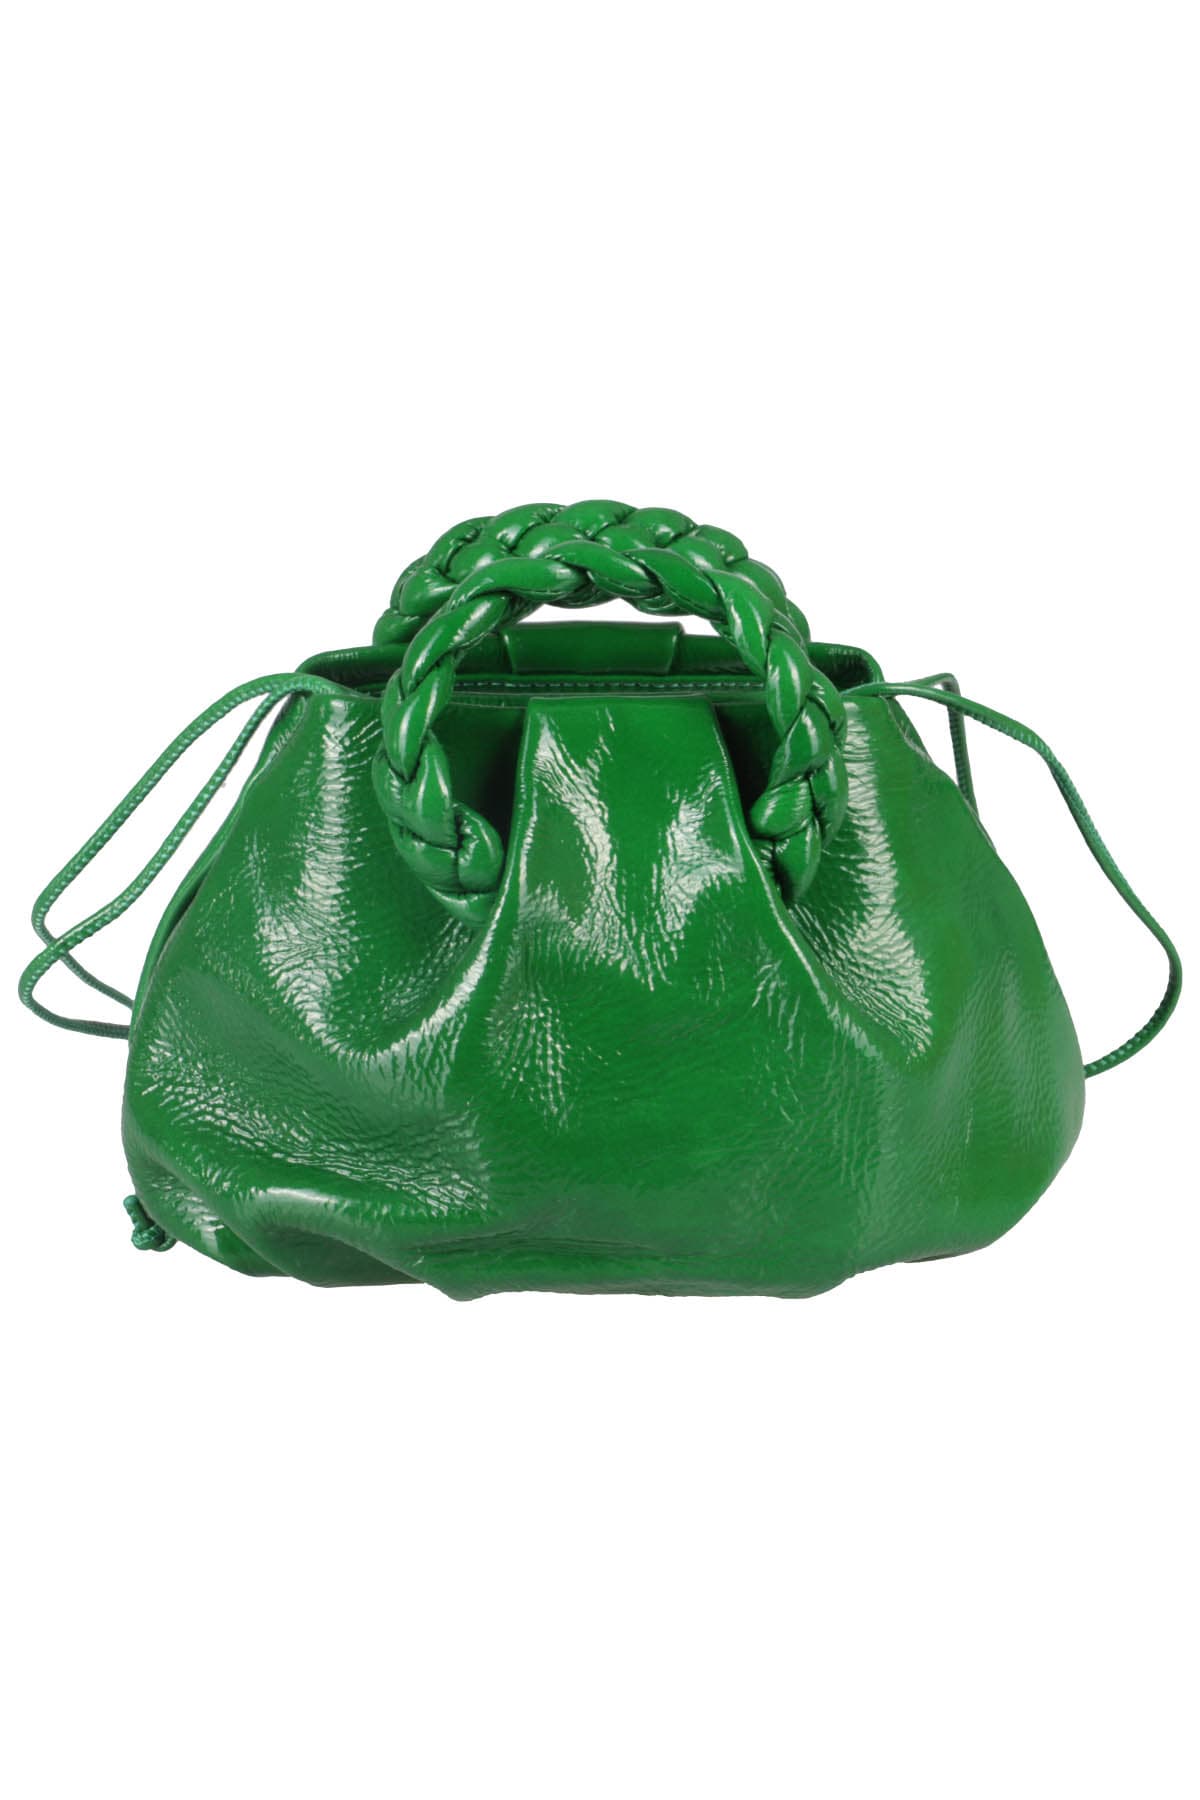 HEREU, Bags, Hereu Bombon Crinkled Glossy Green Bag